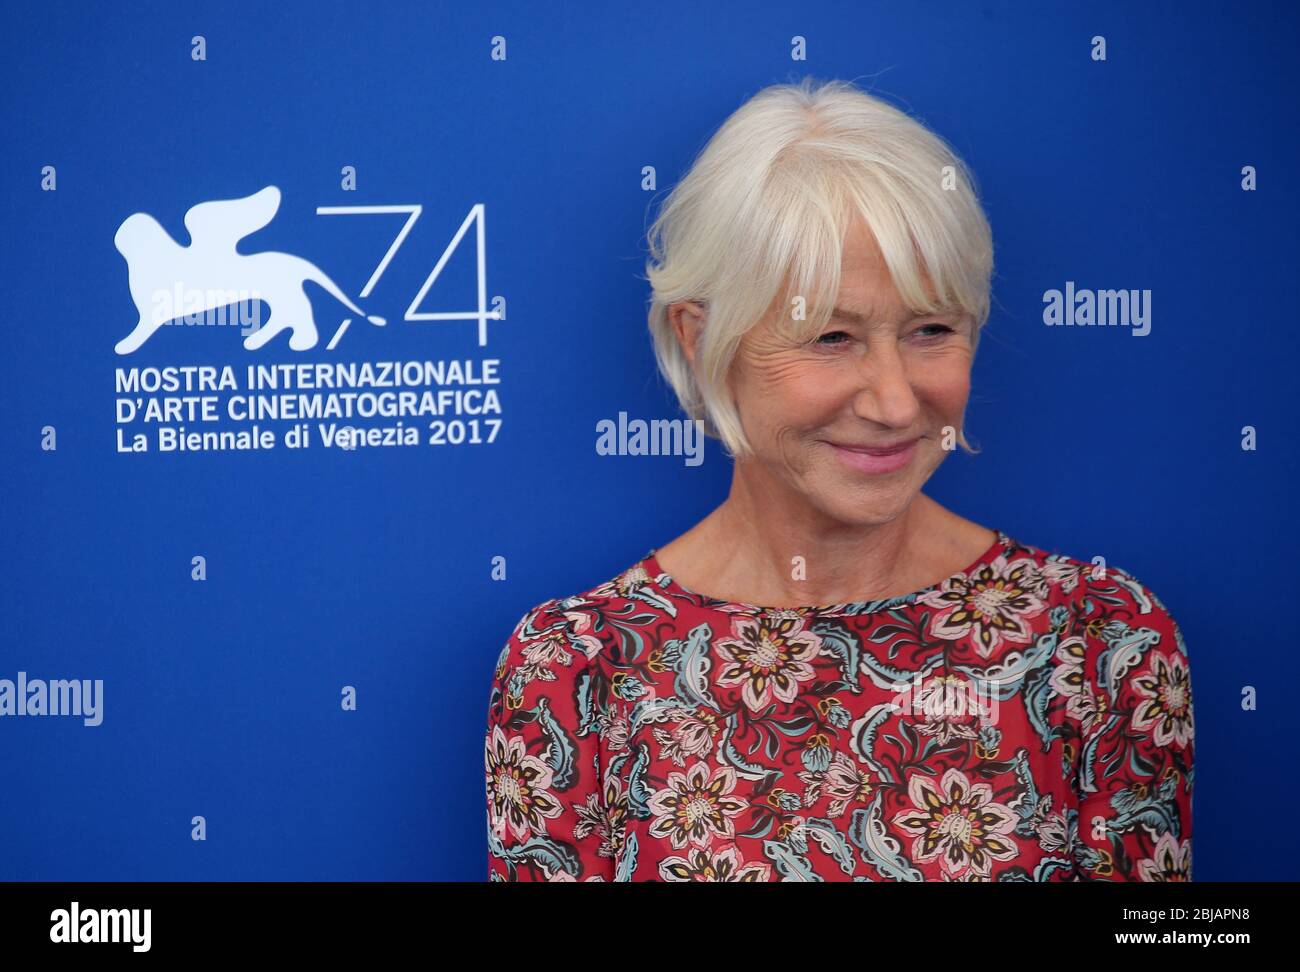 VENISE, ITALIE - SEPTEMBRE 03: Helen Mirren assiste au "The Leisure Seeker (Ella & John)" photo-cinéma pendant le 74ème Festival de Venise Banque D'Images